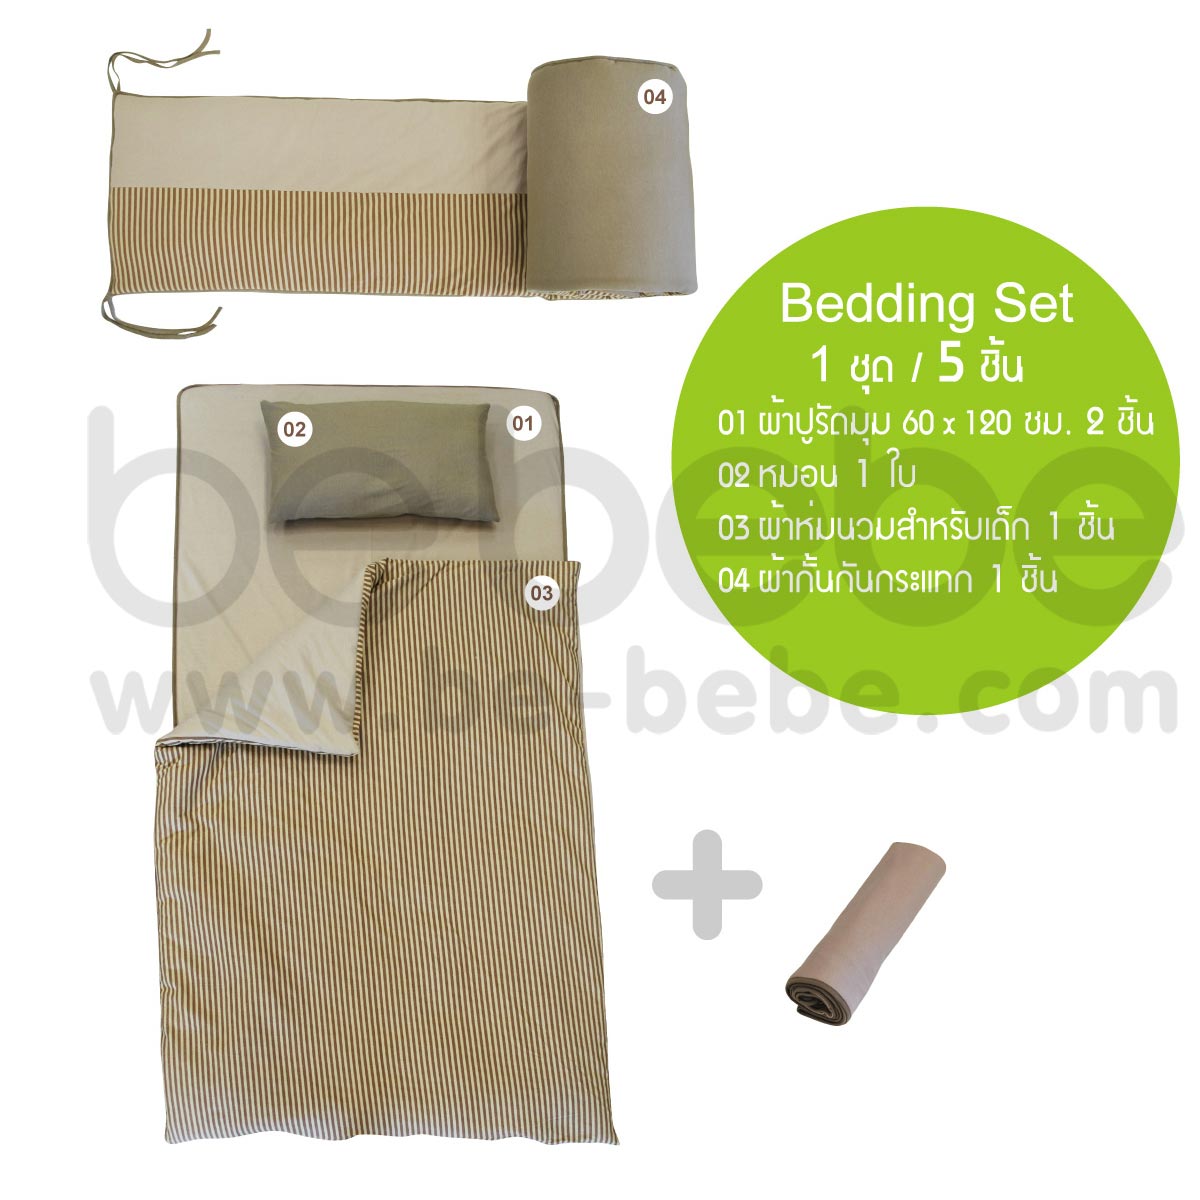 be bebe:Bedding Set 60x120 (5 Pcs.)/Big strip 